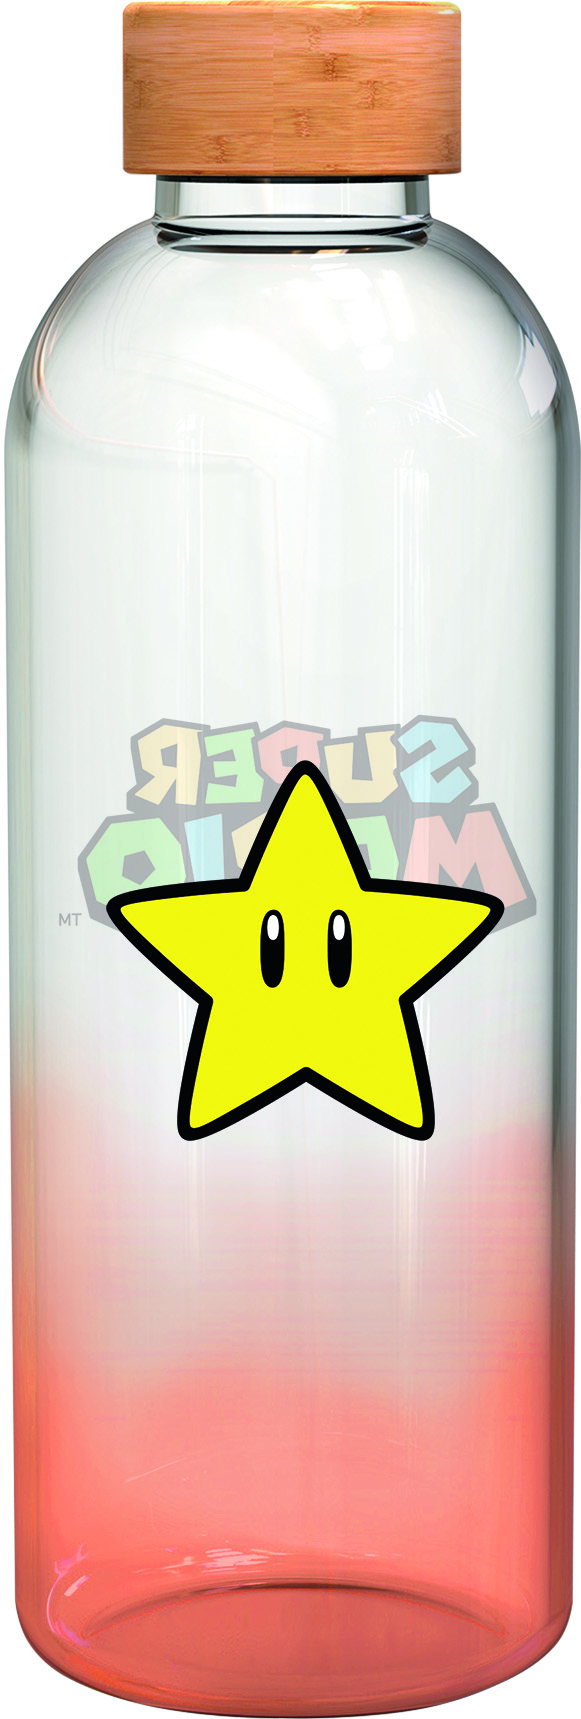 Super Glasflasche Stern STOR Glasflasche Mario